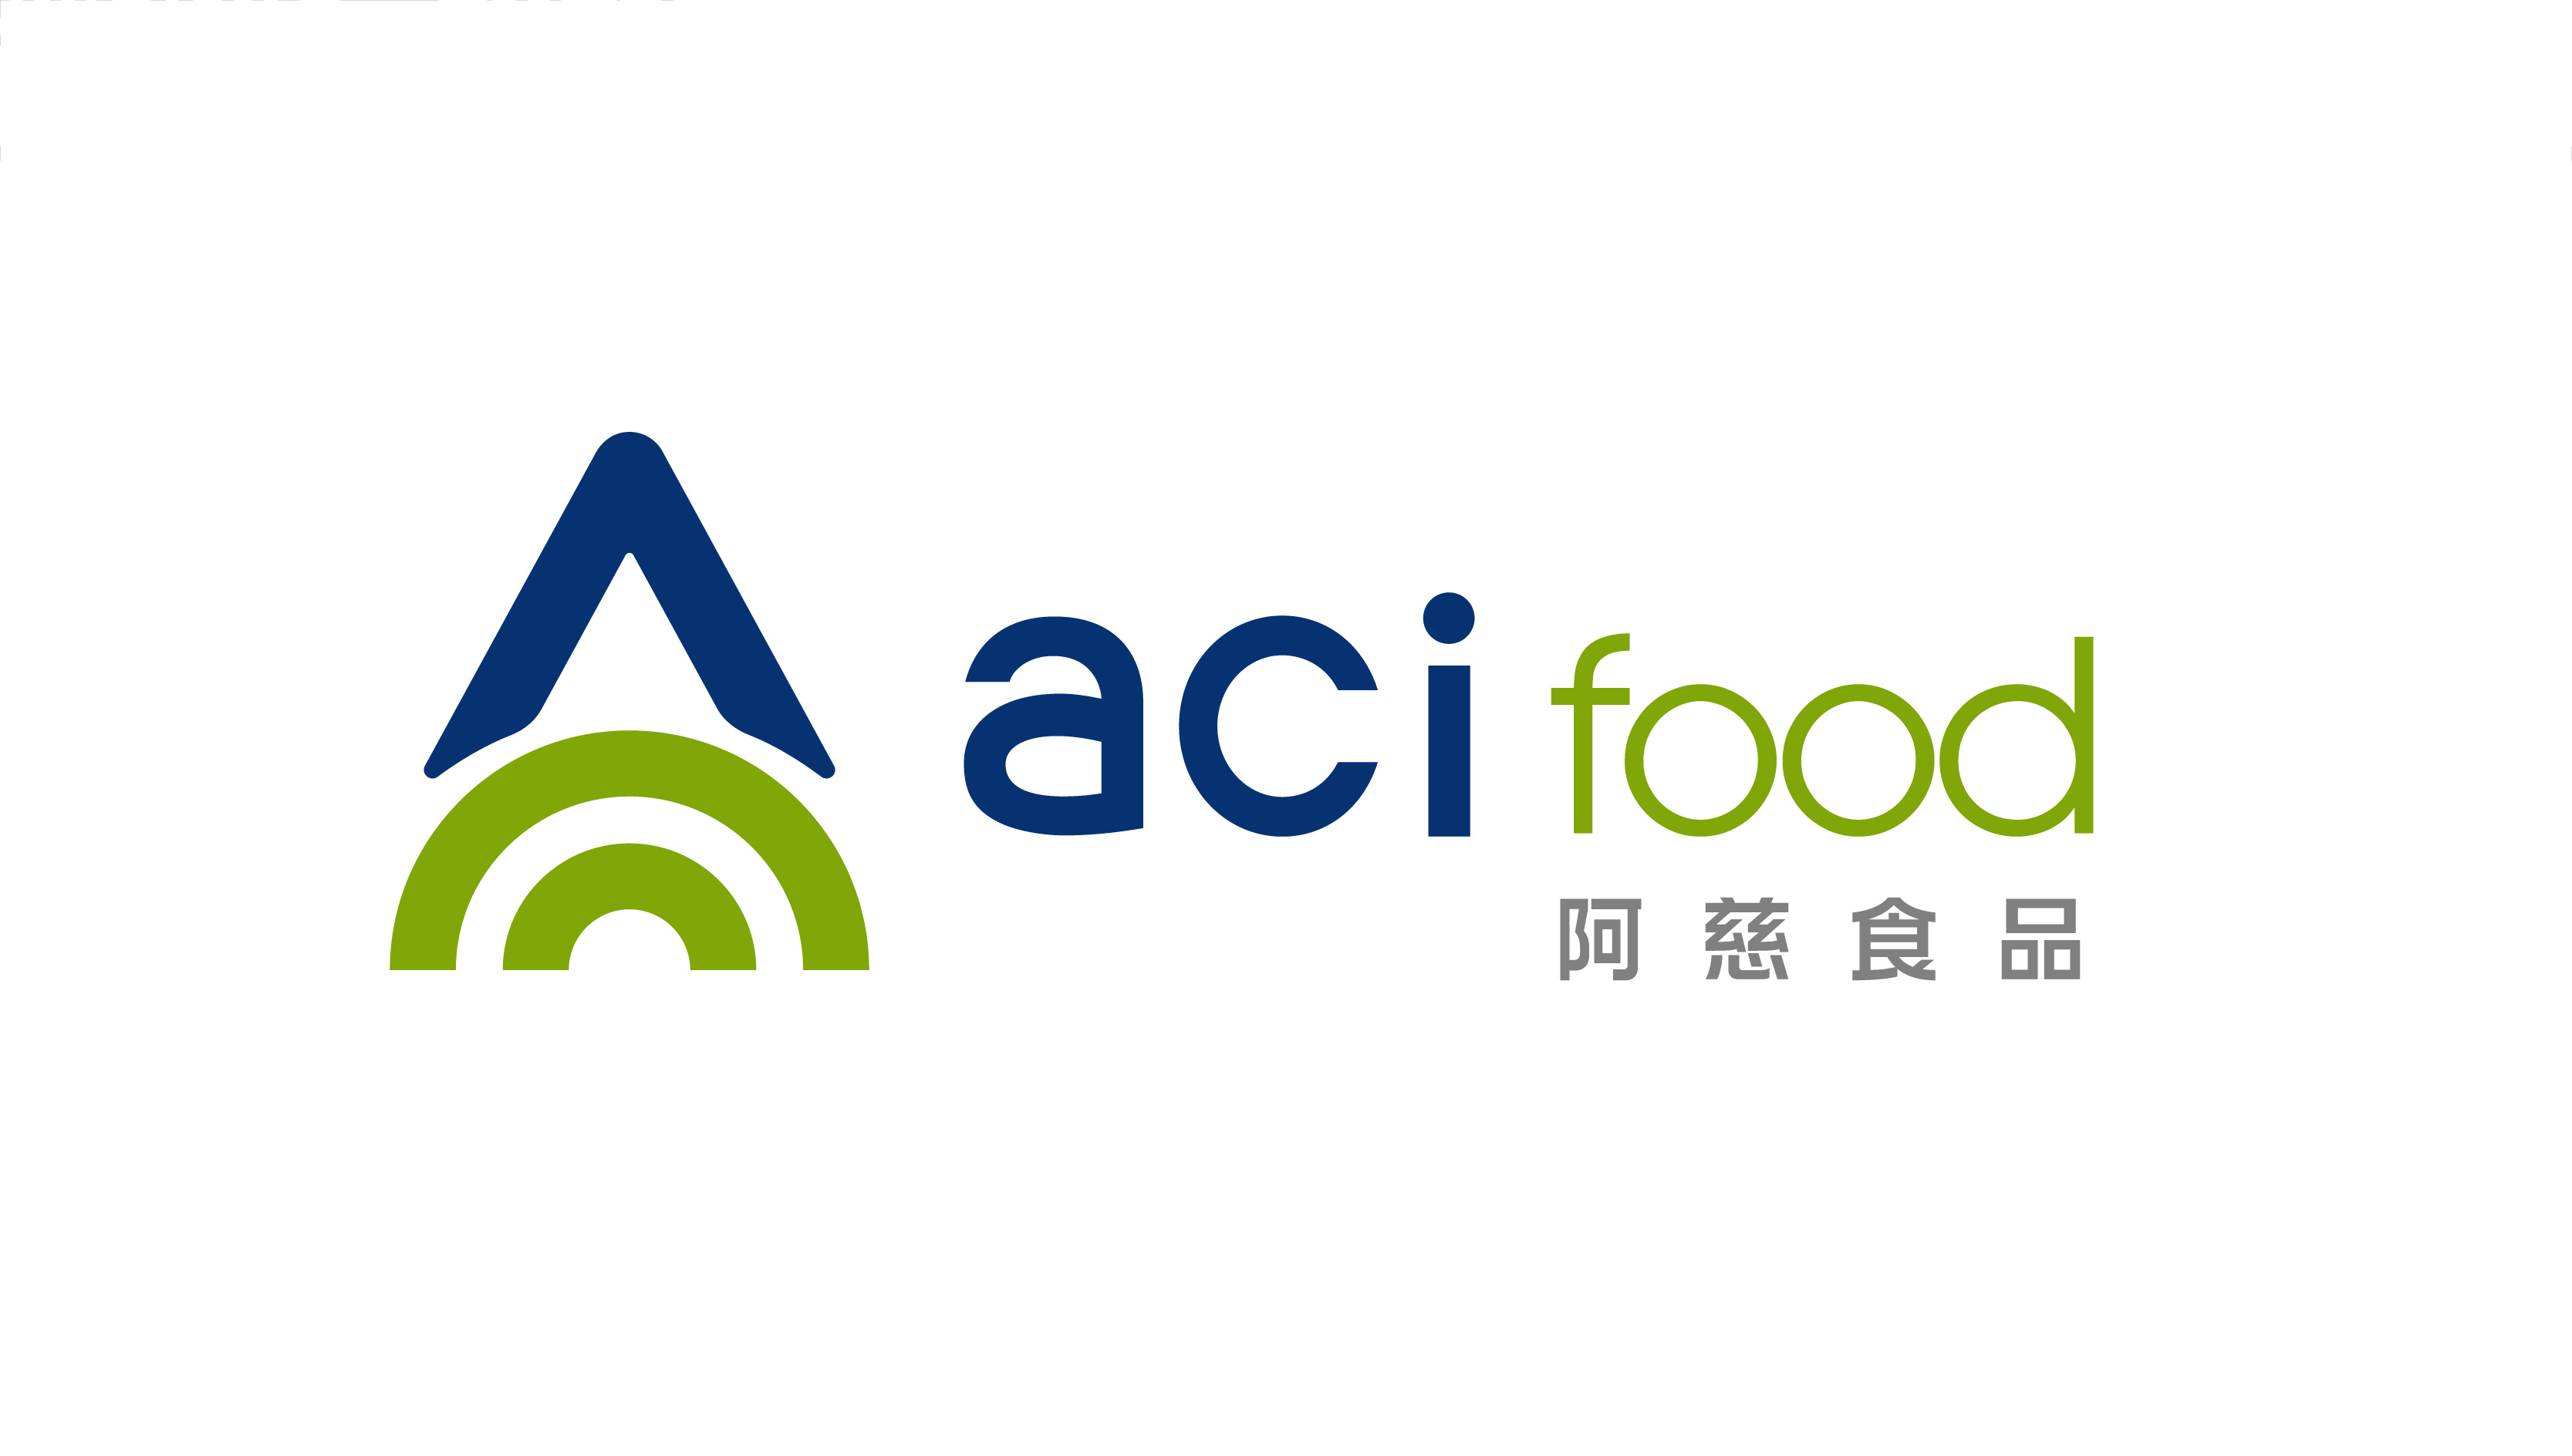 食品企业logo设计-阿慈食品品牌vi形象设计